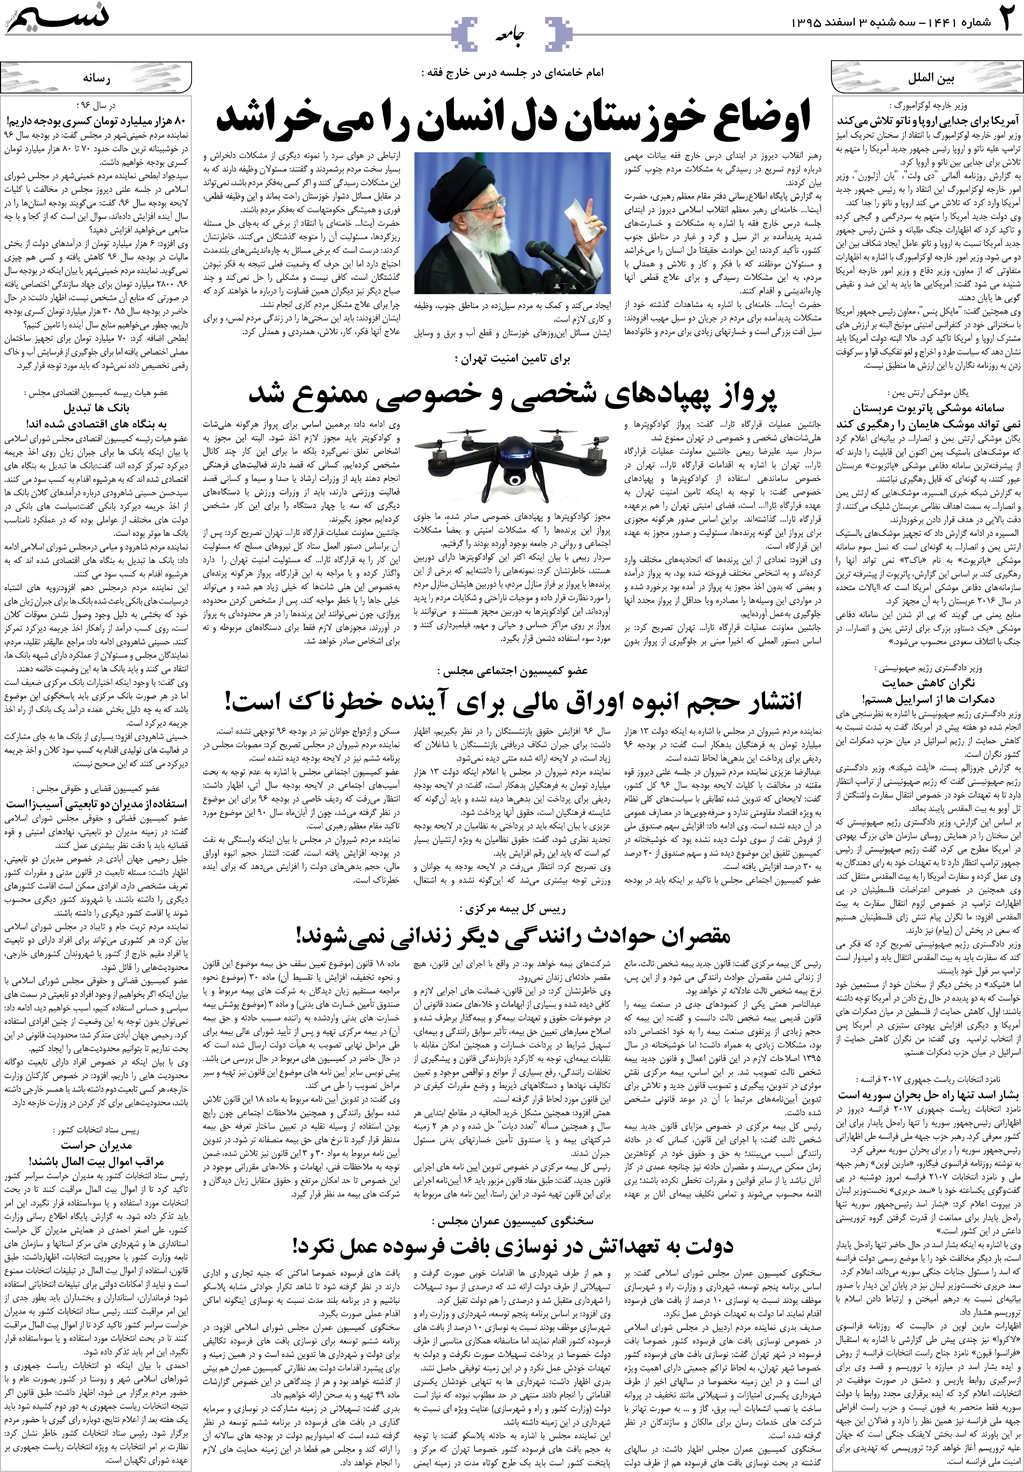 صفحه جامعه روزنامه نسیم شماره 1441